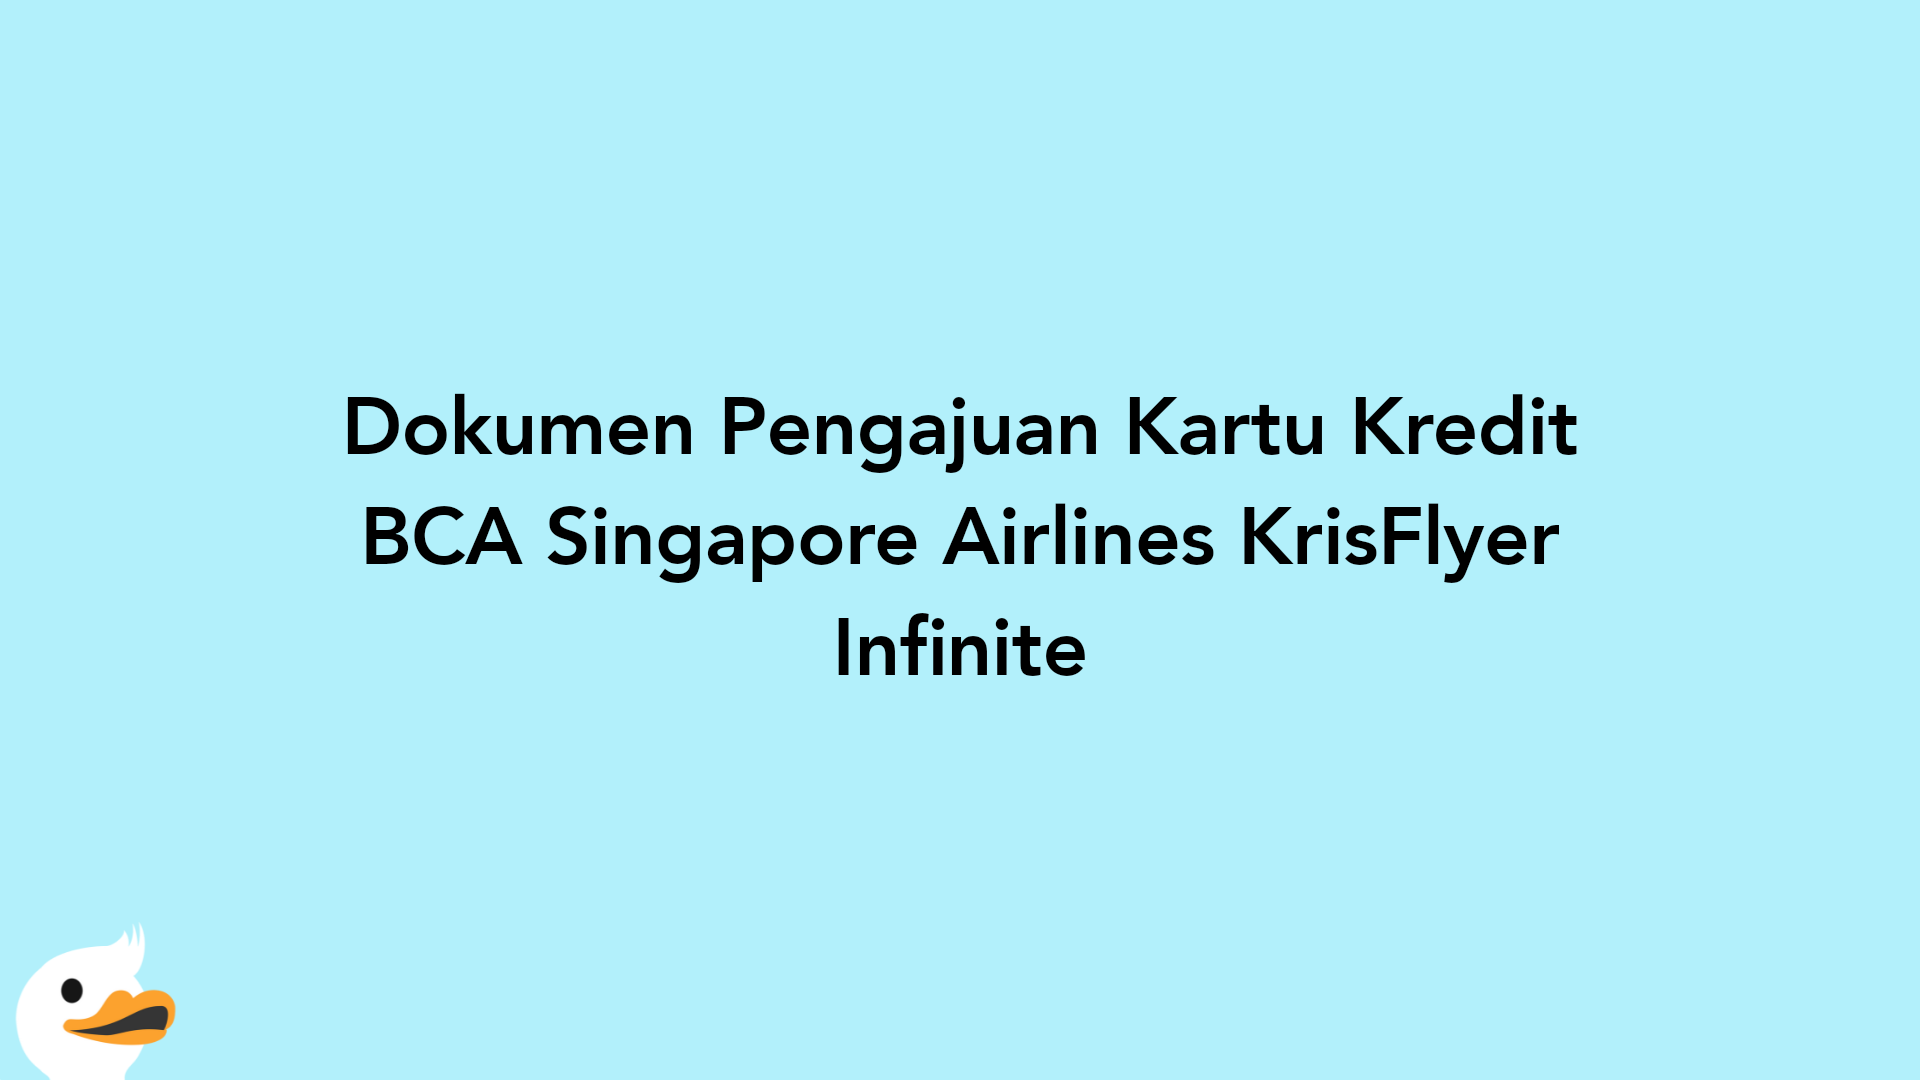 Dokumen Pengajuan Kartu Kredit BCA Singapore Airlines KrisFlyer Infinite